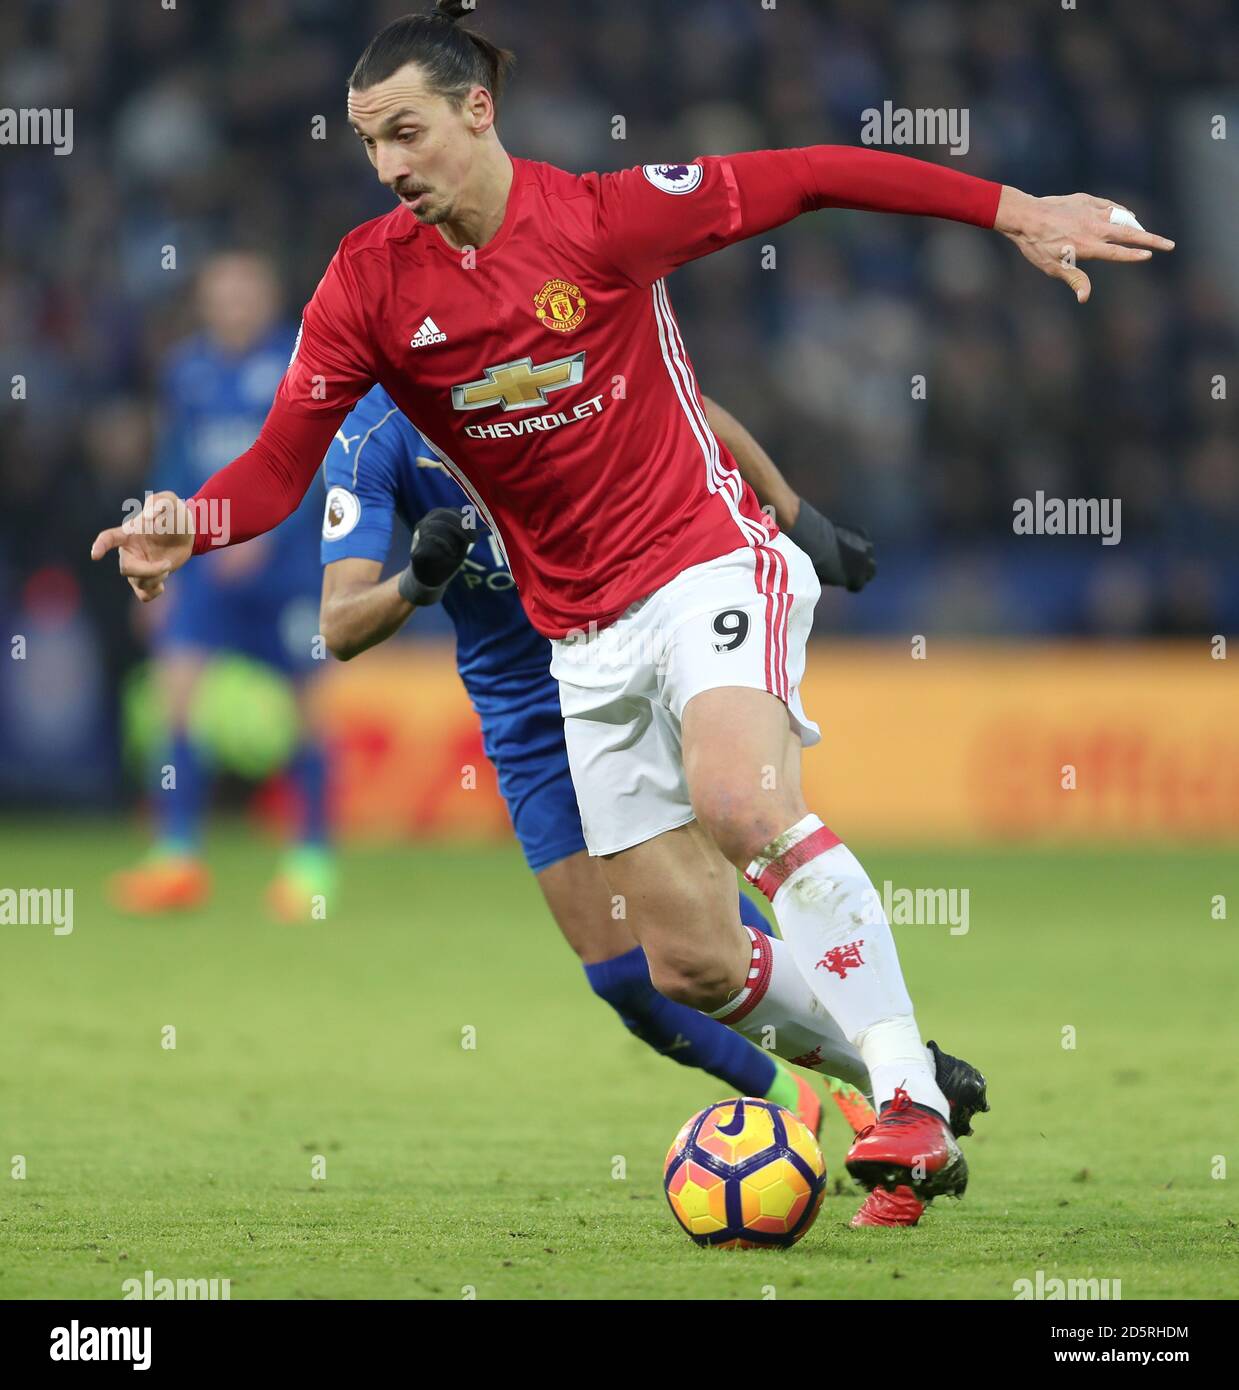 El Manchester United Zlatan Ibrahimovic en acción Fotografía de stock -  Alamy